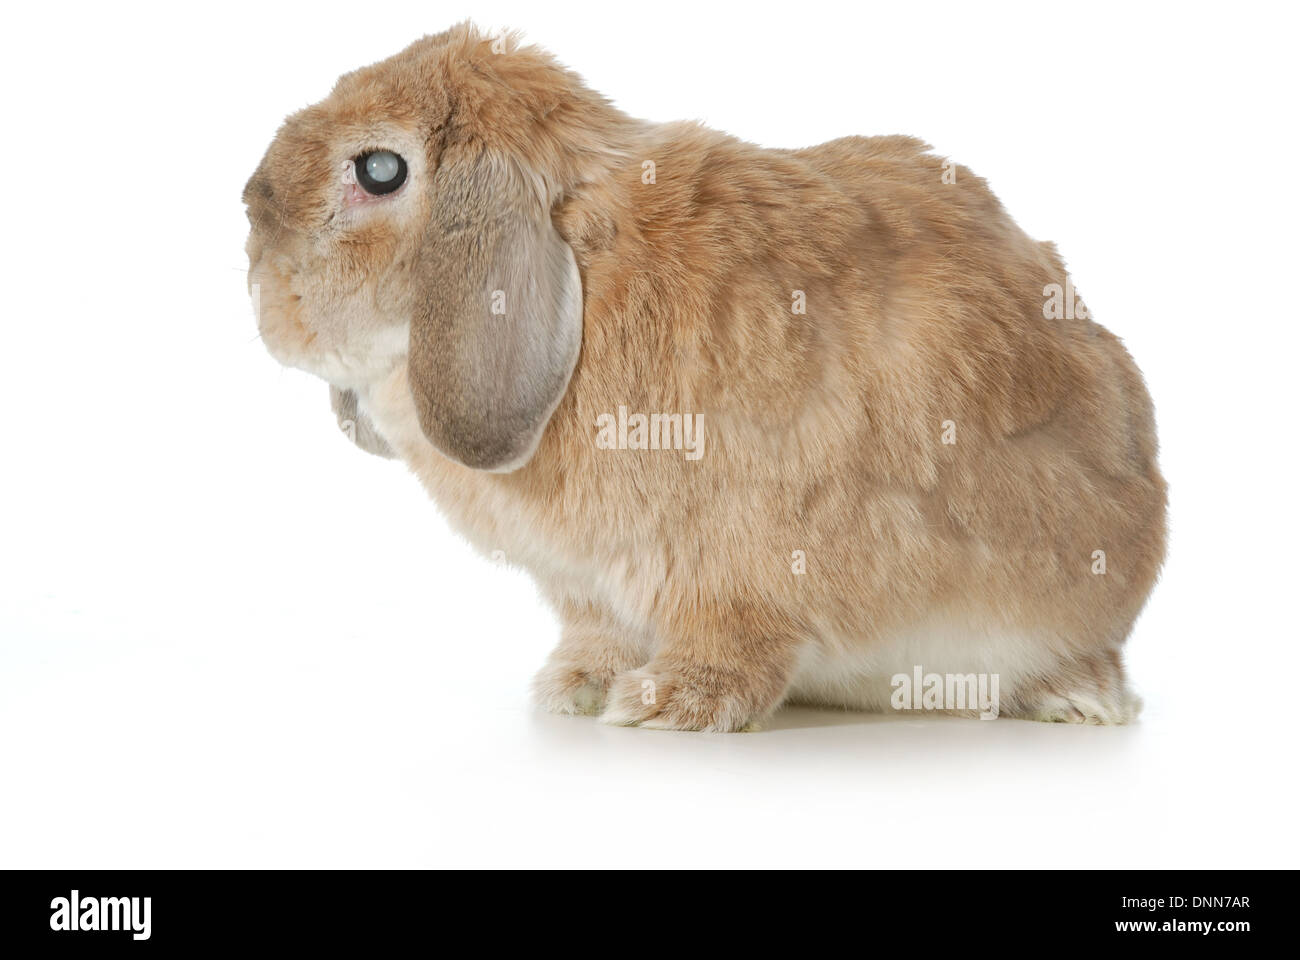 Senior Kaninchen mit grauem Star isoliert auf weißem Hintergrund - lop  eared Stockfotografie - Alamy